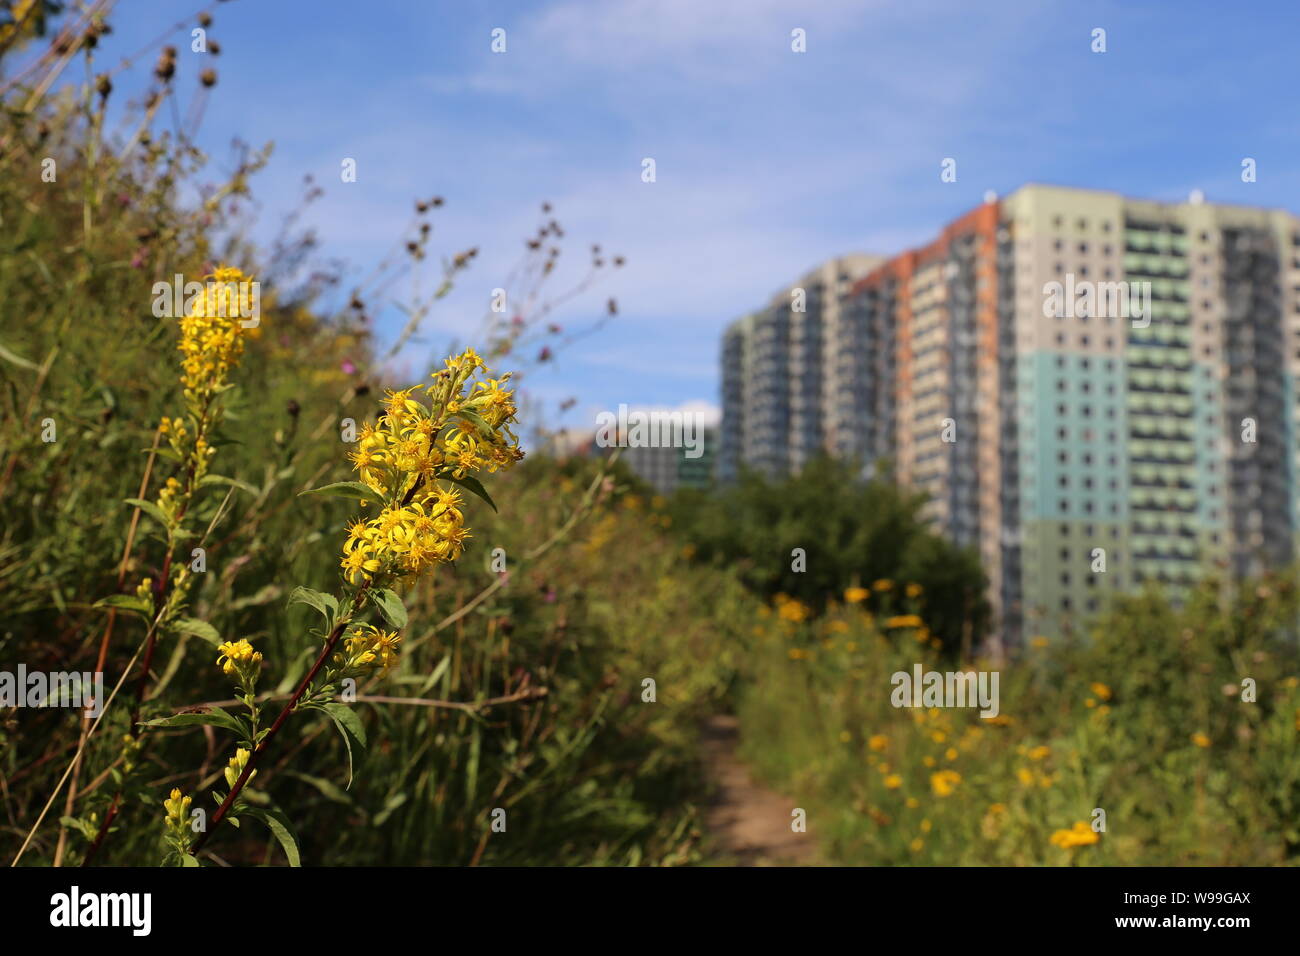 Blick auf die Wohnhäuser von dem Hügel, bewachsen mit Gras und wilden Blumen der Goldrute. Konzept der Ökologie in einer Stadt, umweltfreundliche Bereich Stockfoto